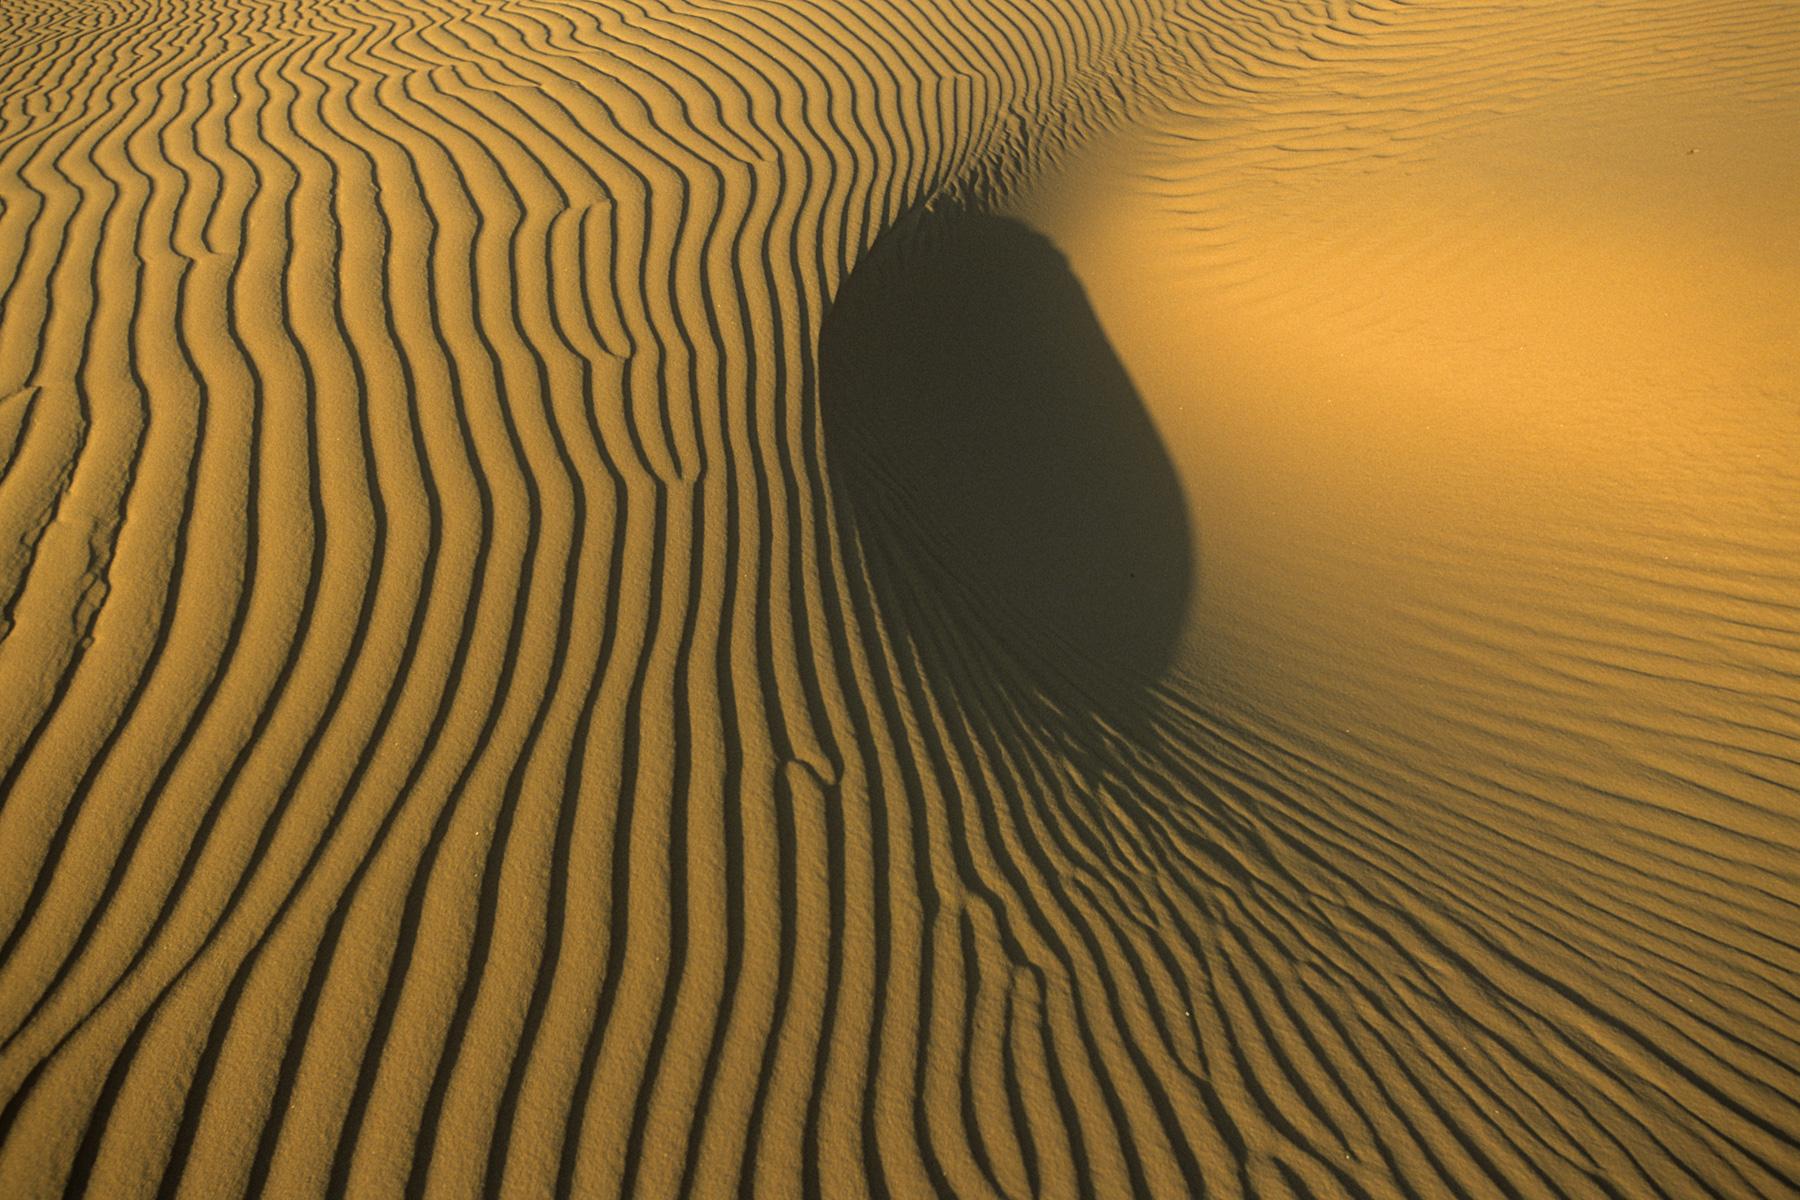 Effets de lumière sur les rides de sable dans les dunes de l'Erg Oubari (Lybie).